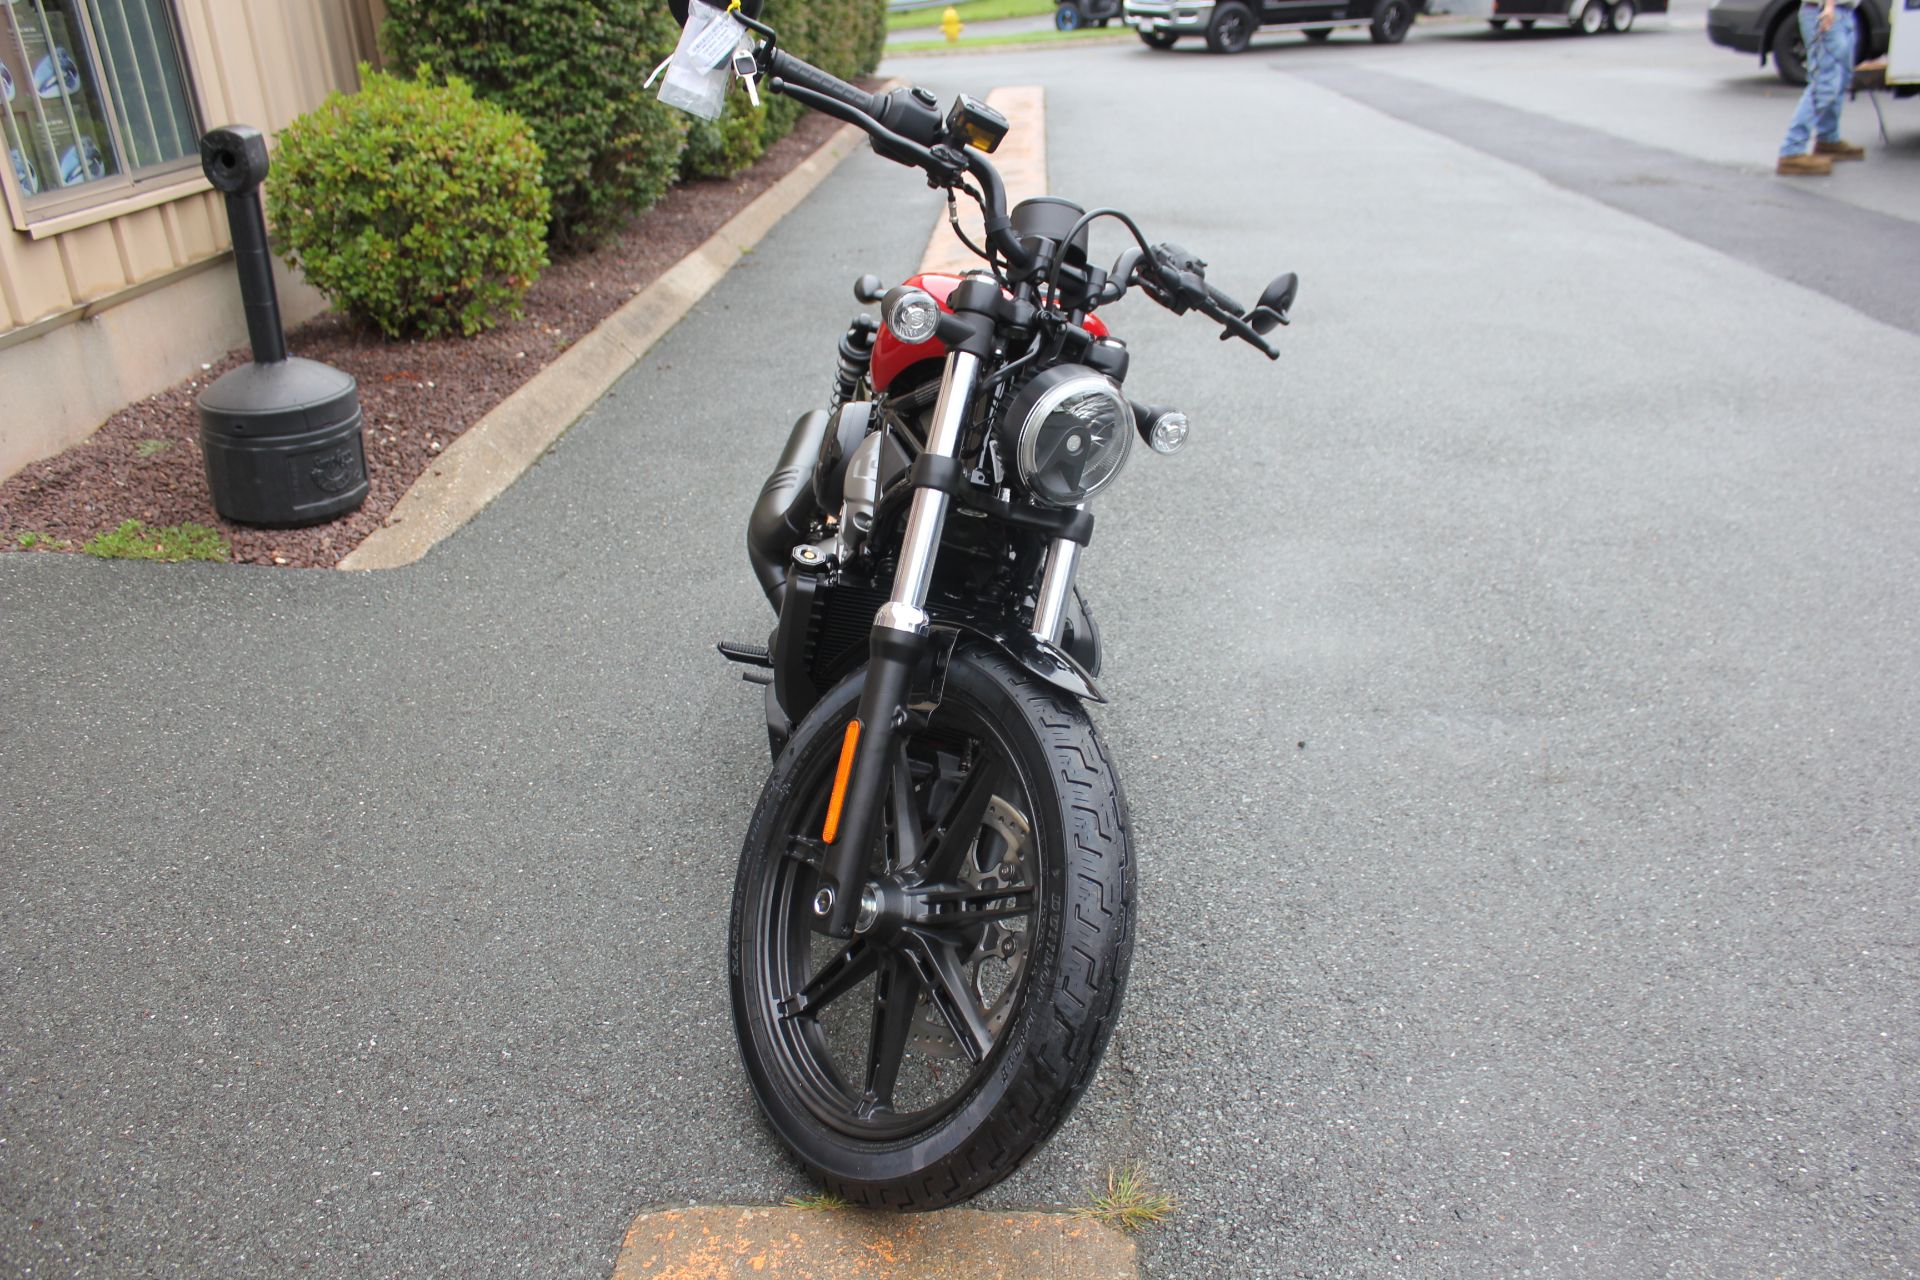 2023 Harley-Davidson Nightster® in Pittsfield, Massachusetts - Photo 7